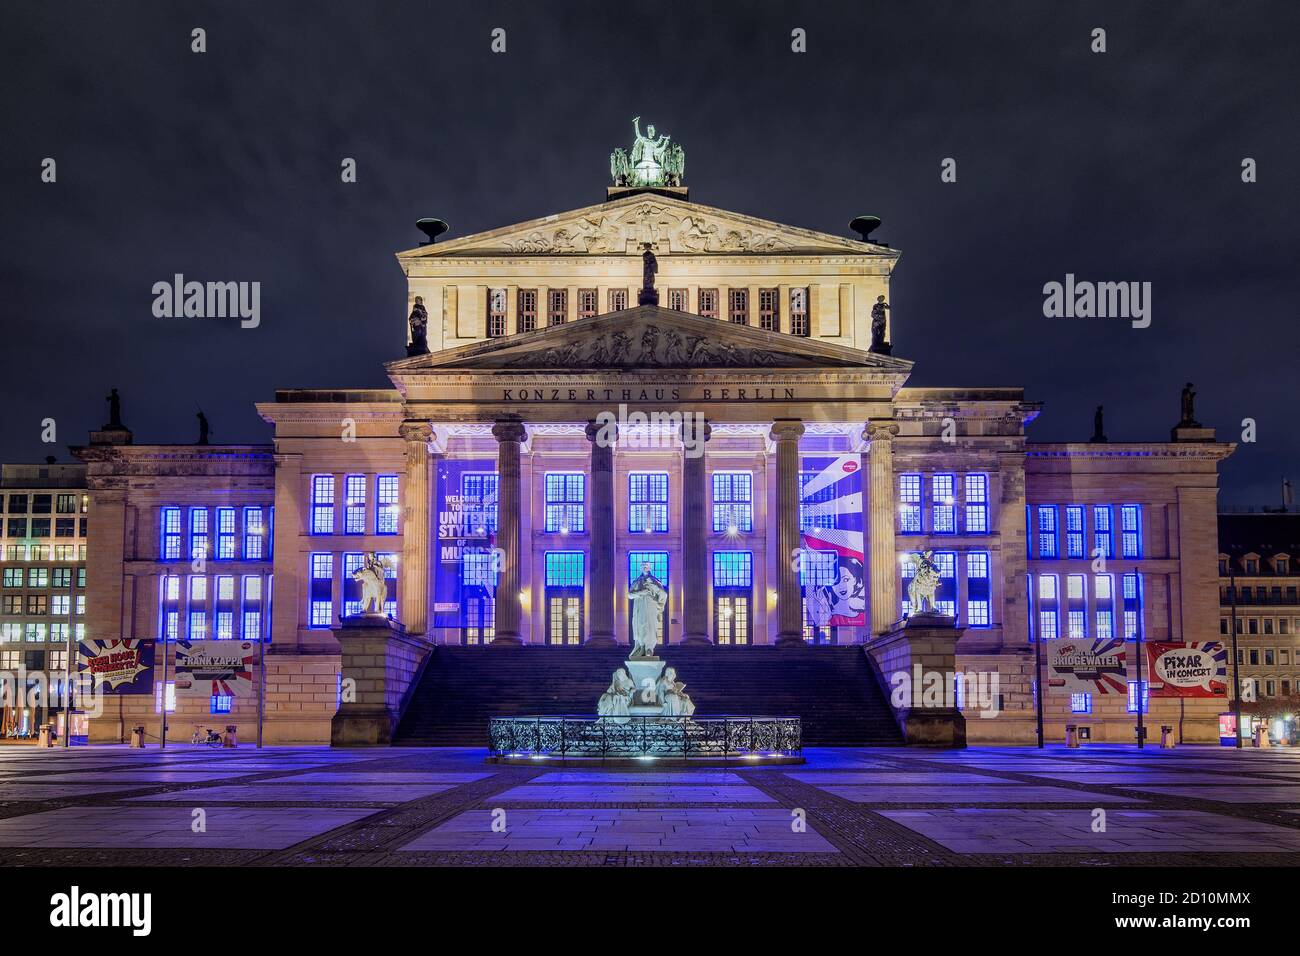 Berlin / Germany - February 16, 2017: Konzerthaus Berlin concert hall in the Gendarmenmarkt square in Berlin, Germany Stock Photo